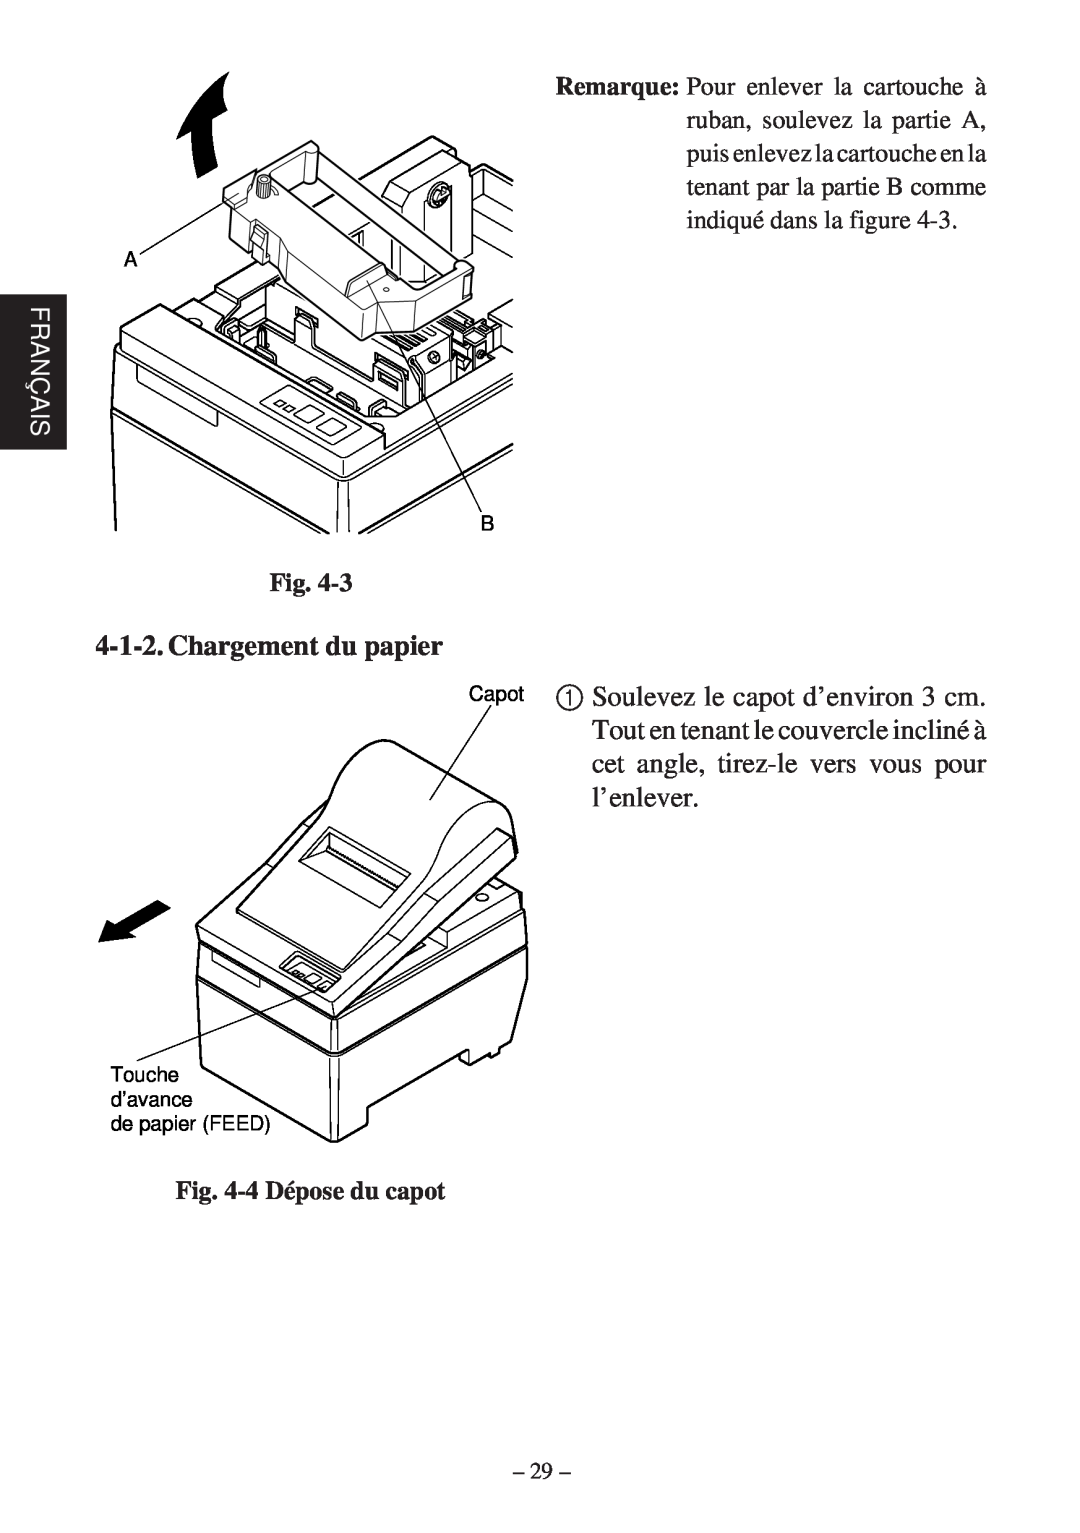 Star Micronics SP200F user manual Chargement du papier, Français, 4 Dépose du capot 